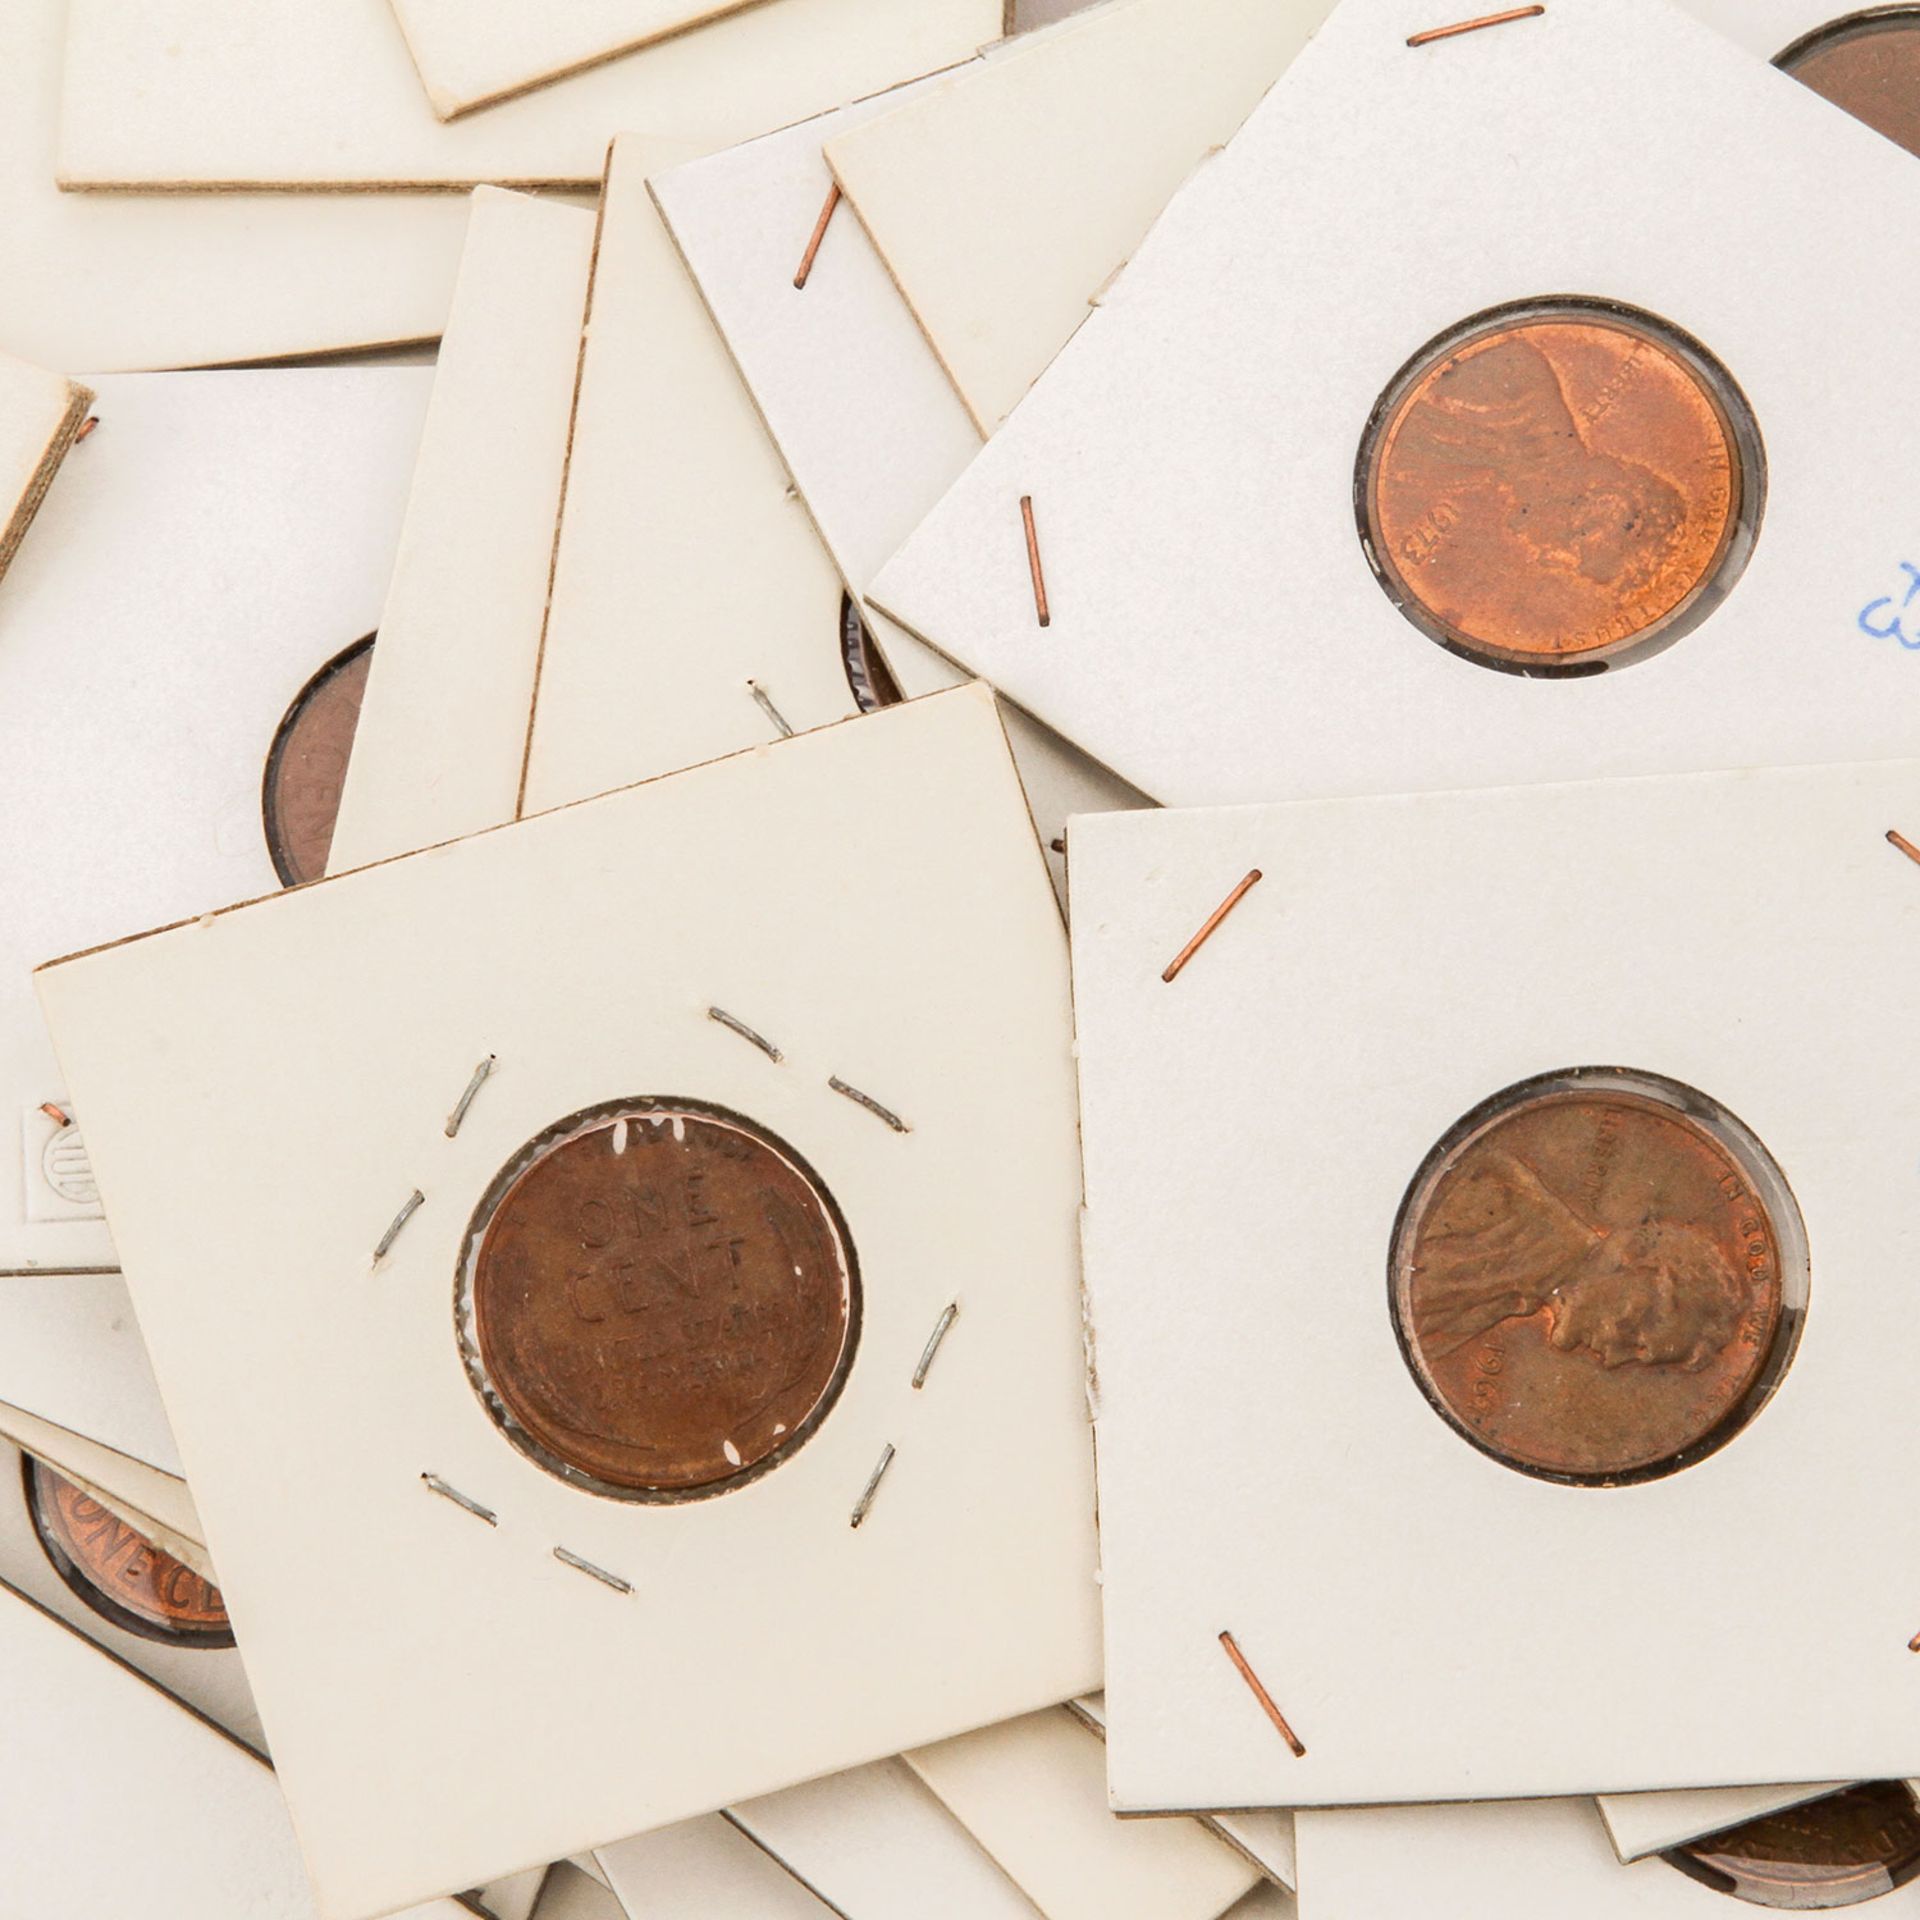 USA - Gut 40 x 1 Cent Münzen aus 1940/74, dabei< - Bild 2 aus 2